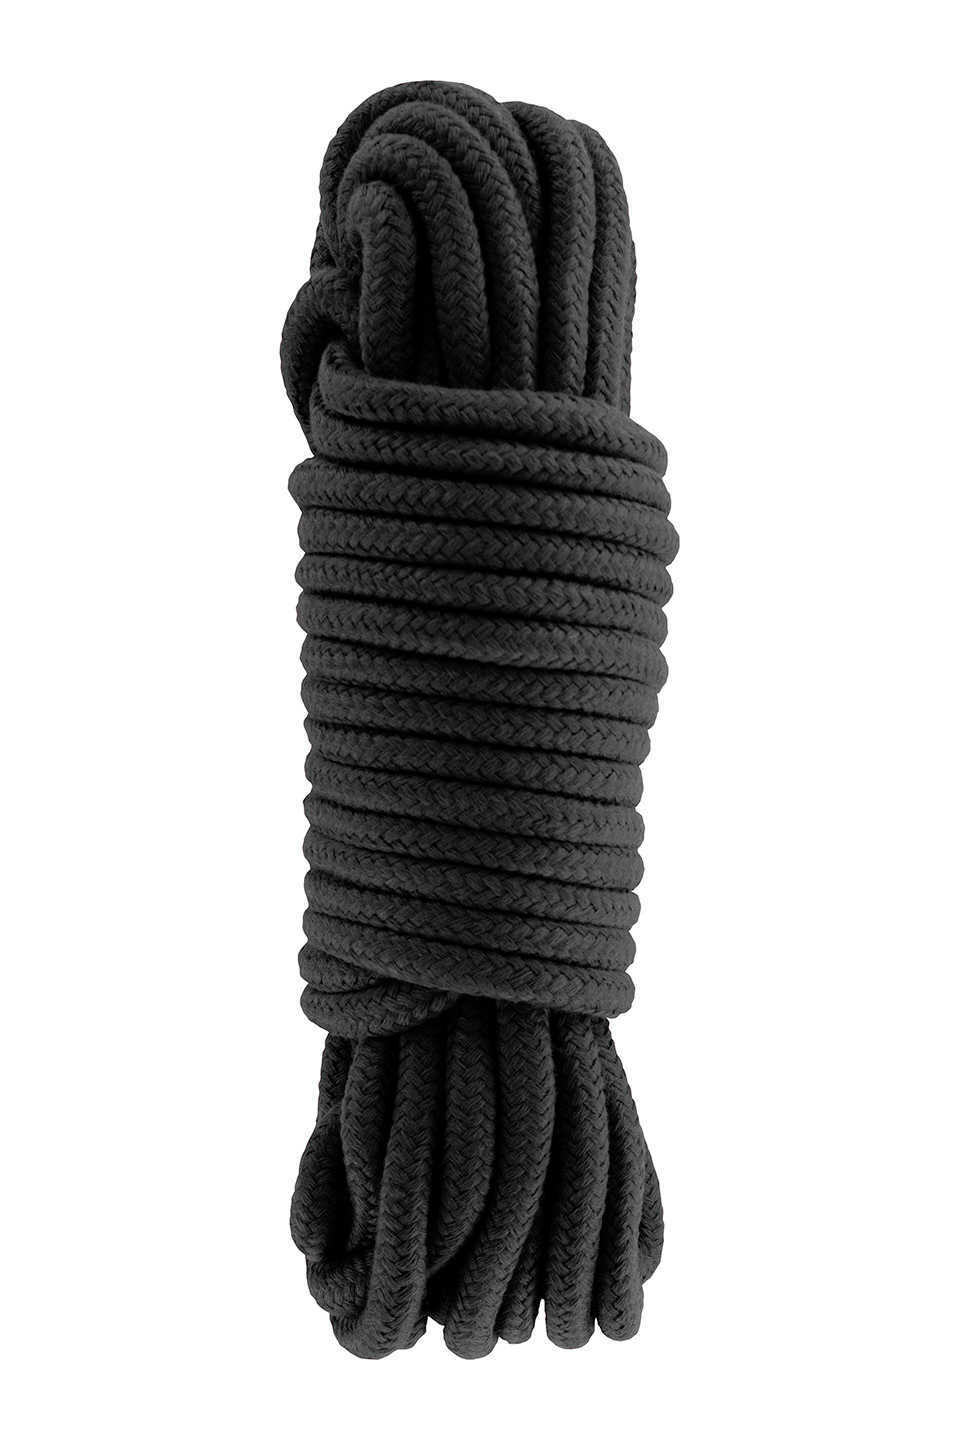 Hidden Desire Bondage Rope 10m